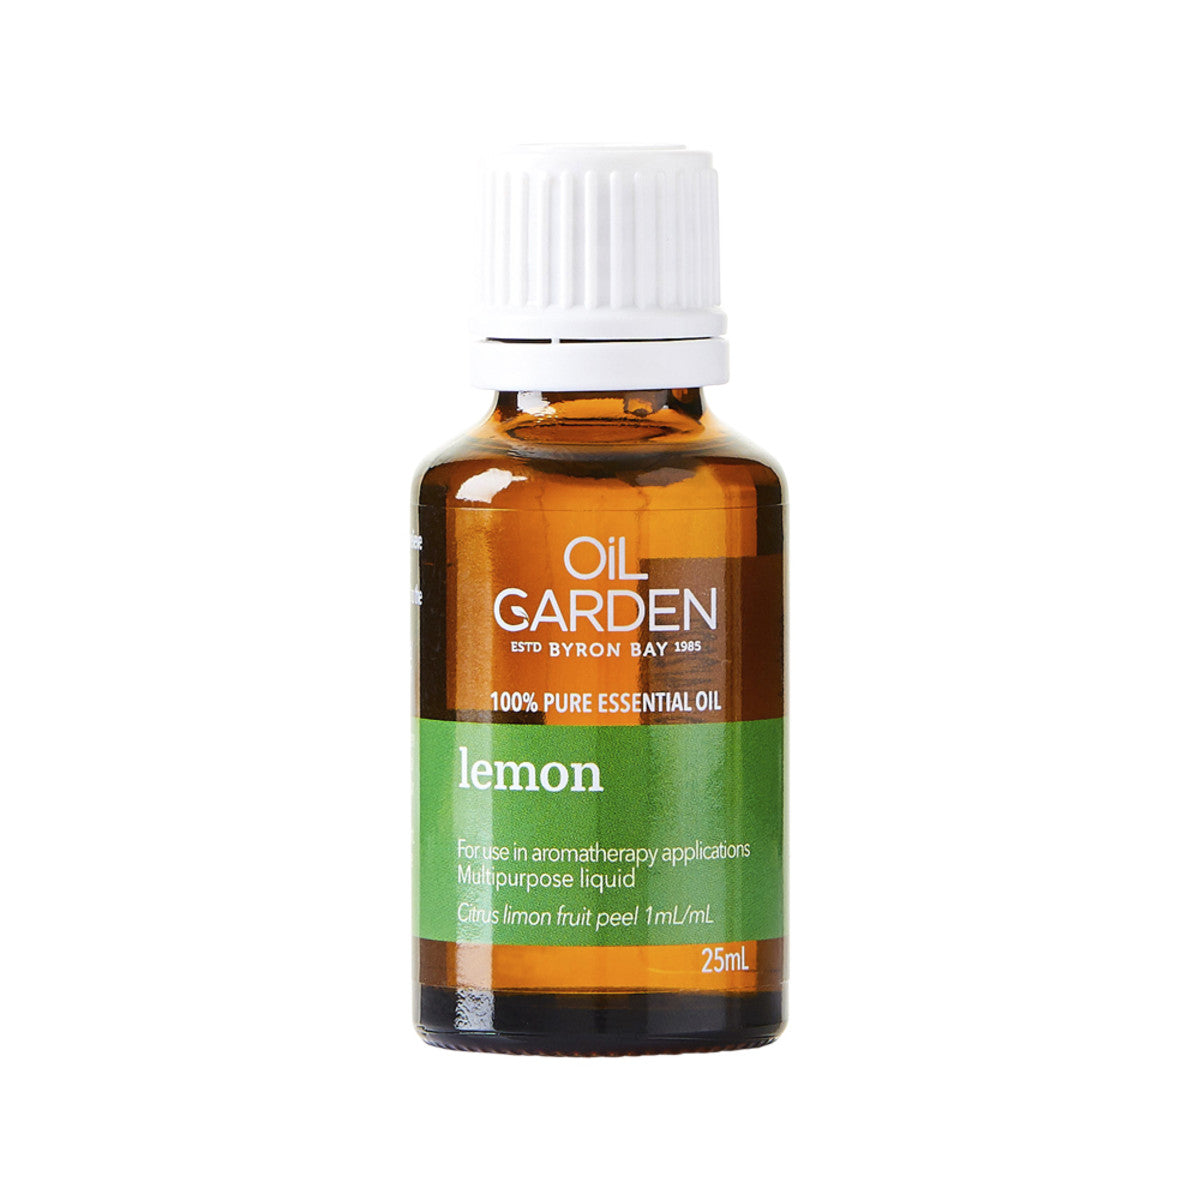 Oil Garden Essential Oil Lemon 25ml